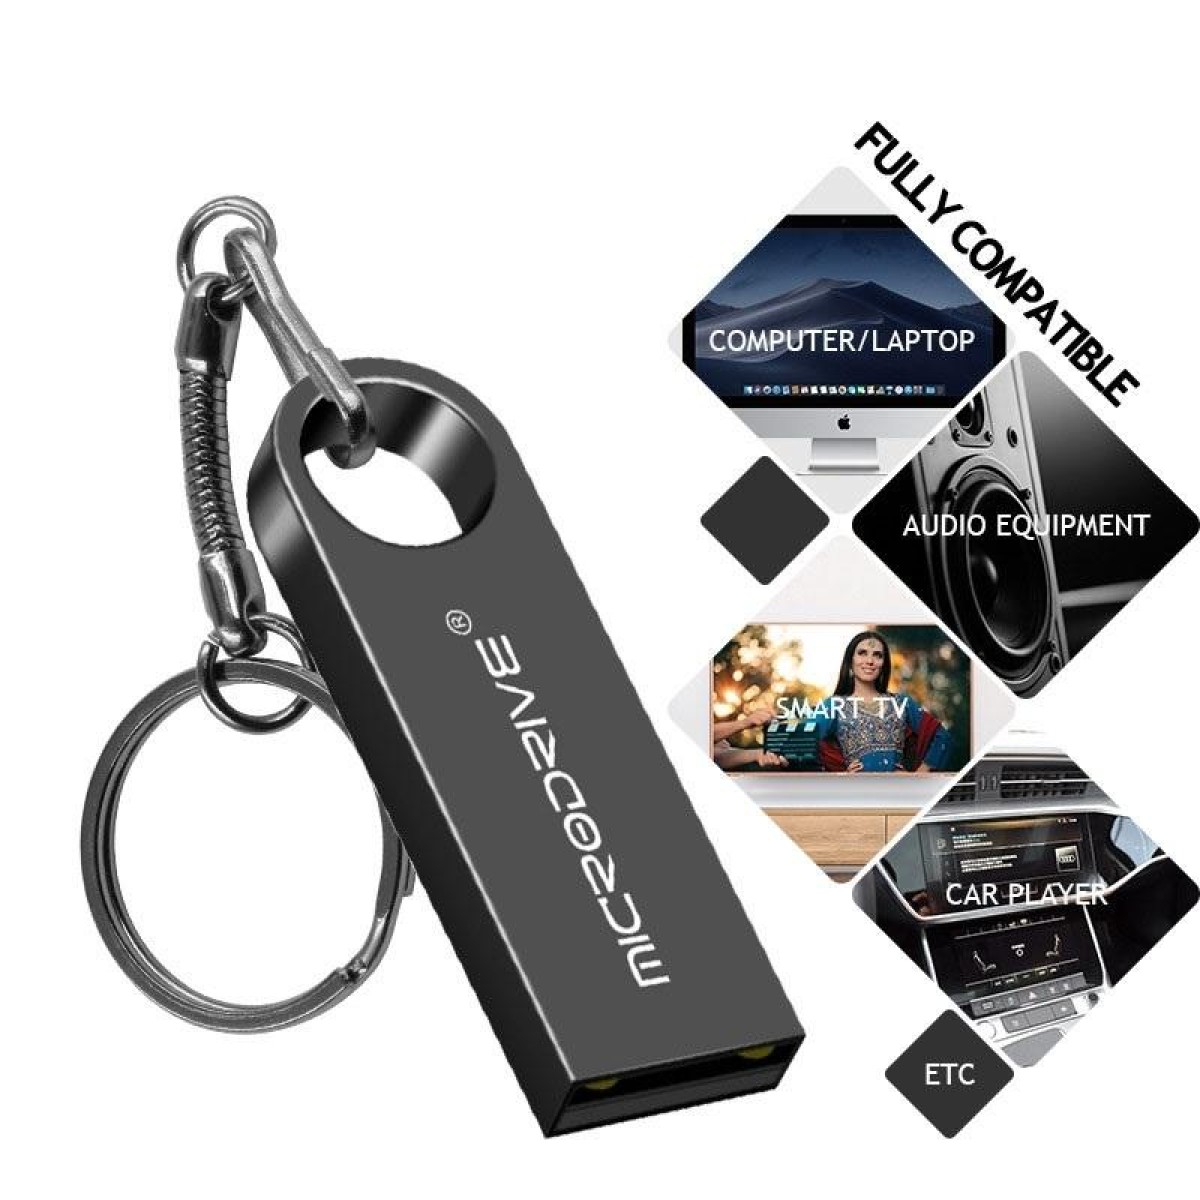 MicroDrive 16GB USB 2.0 Metal Waterproof High Speed U Disk(Black)